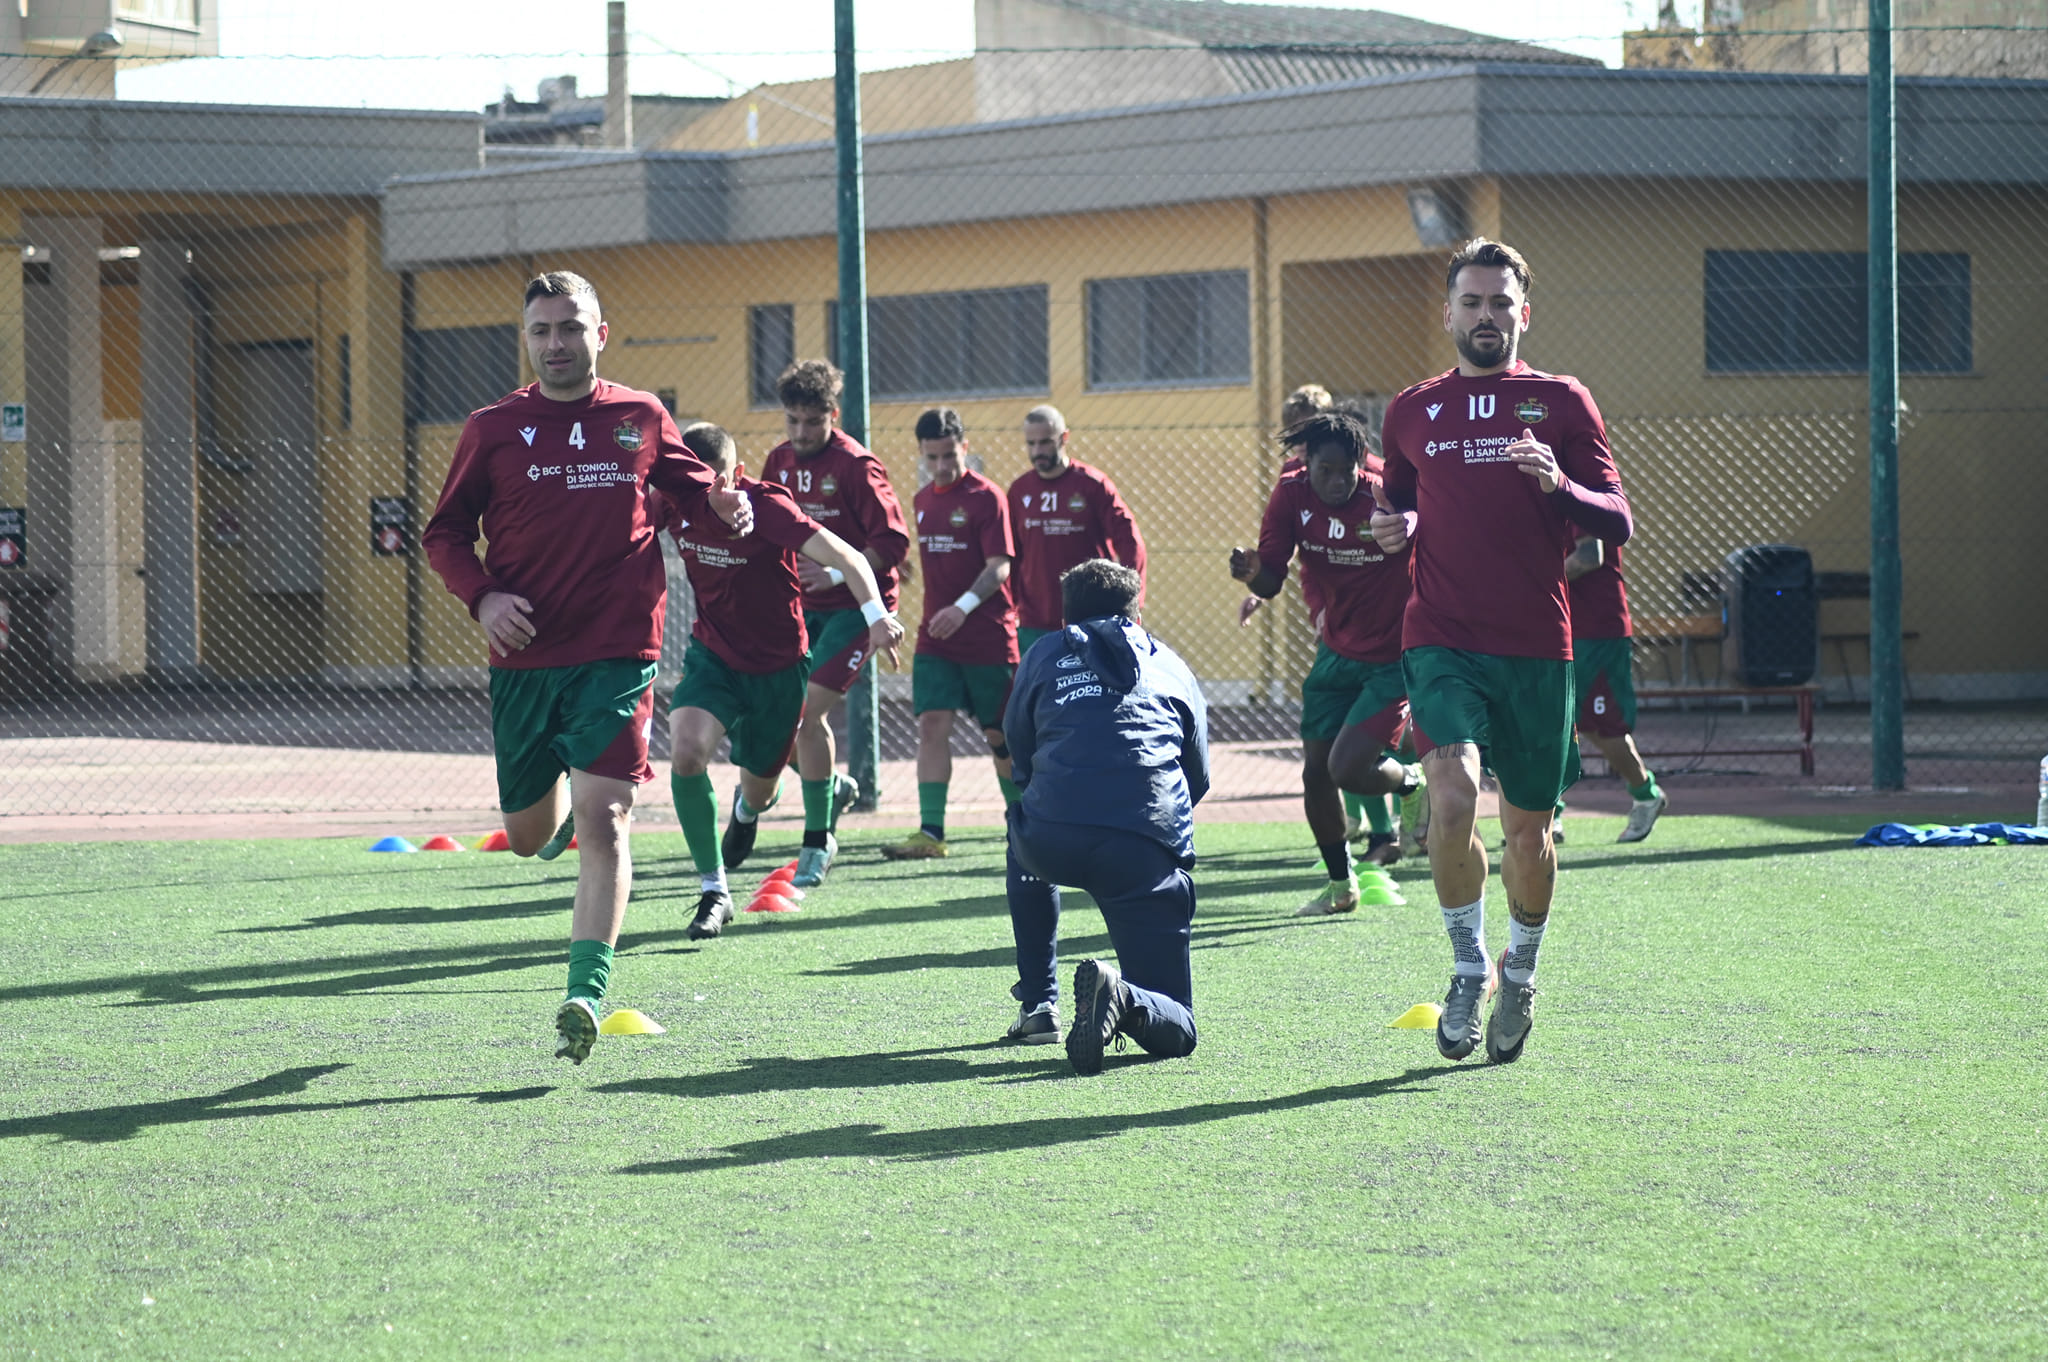 Serie D. Al “Mazzola” la Sancataldese cerca punti per la salvezza diretta nel derby siciliano con l’Akragas